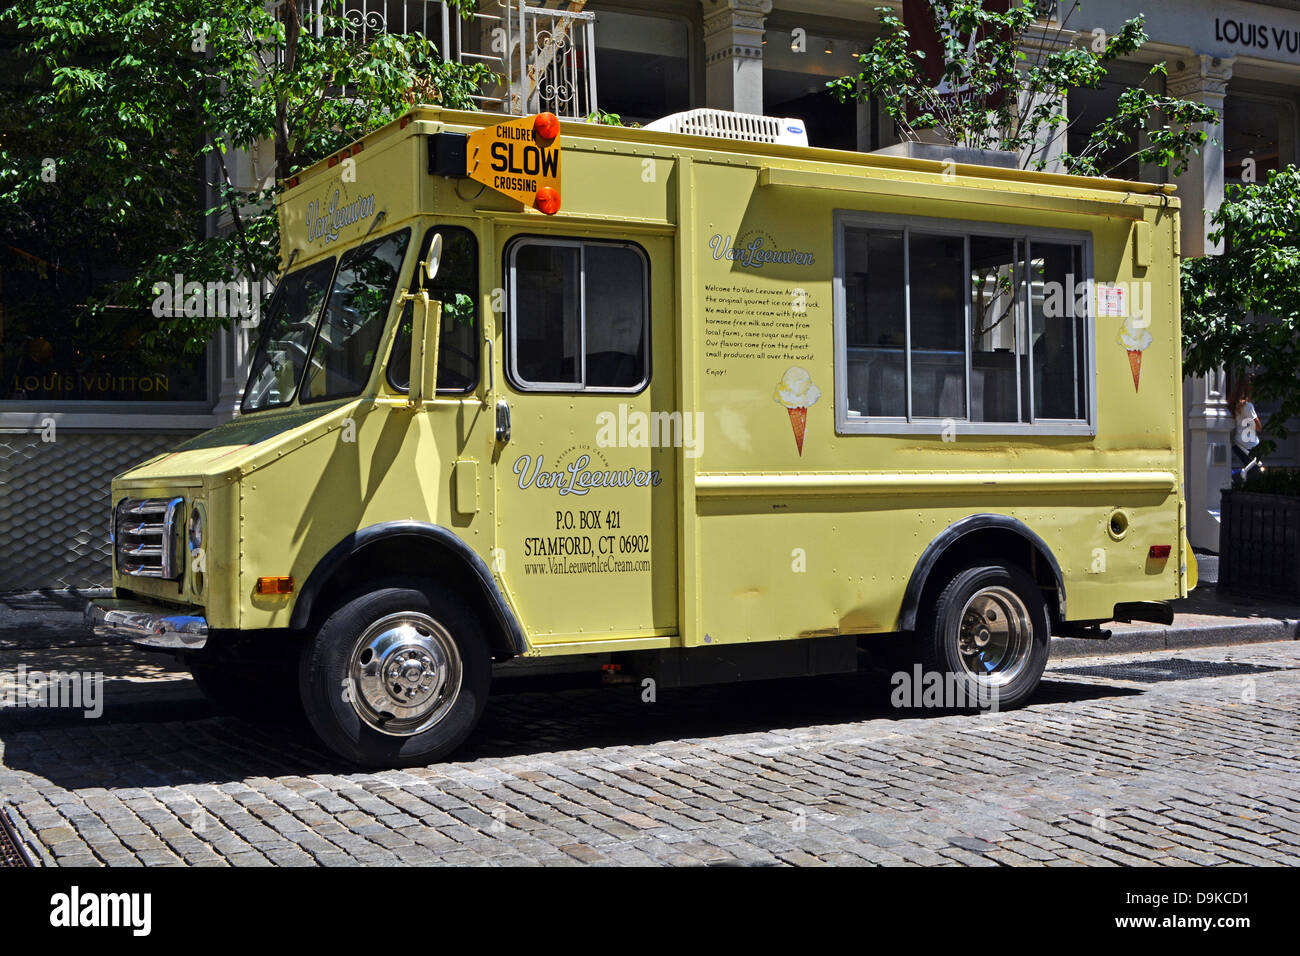 Van Leeuwen camion de crème glacée artisanale vente de desserts gastronomiques dans la section de Soho, Manhattan, New York City Banque D'Images